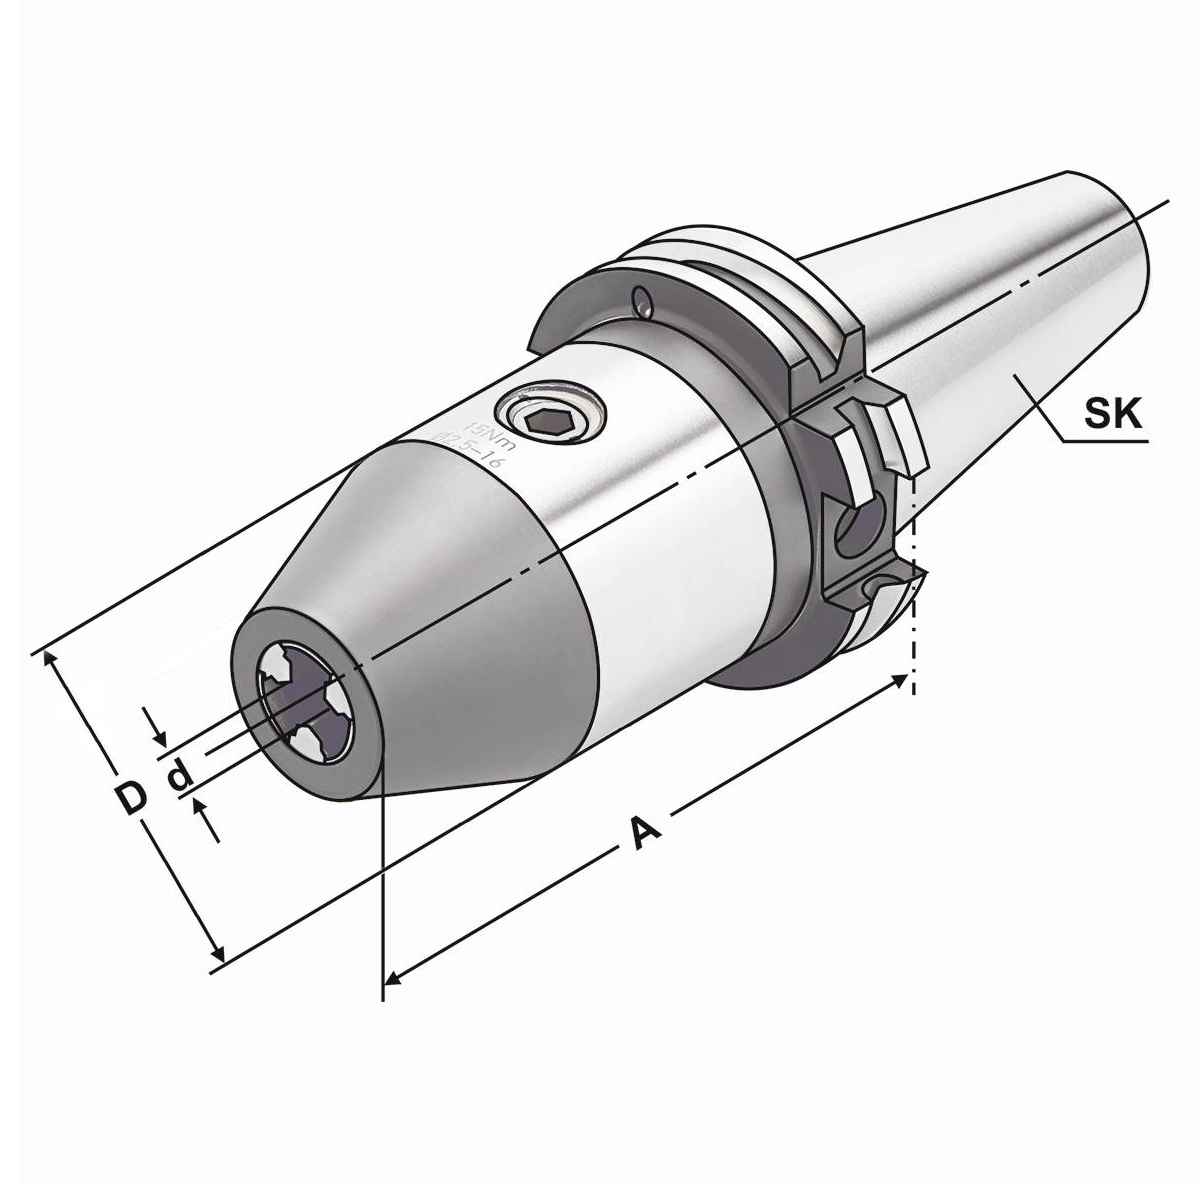 CNC-Bohrfutter SK 50-2,5/16-95 DIN 69871 AD